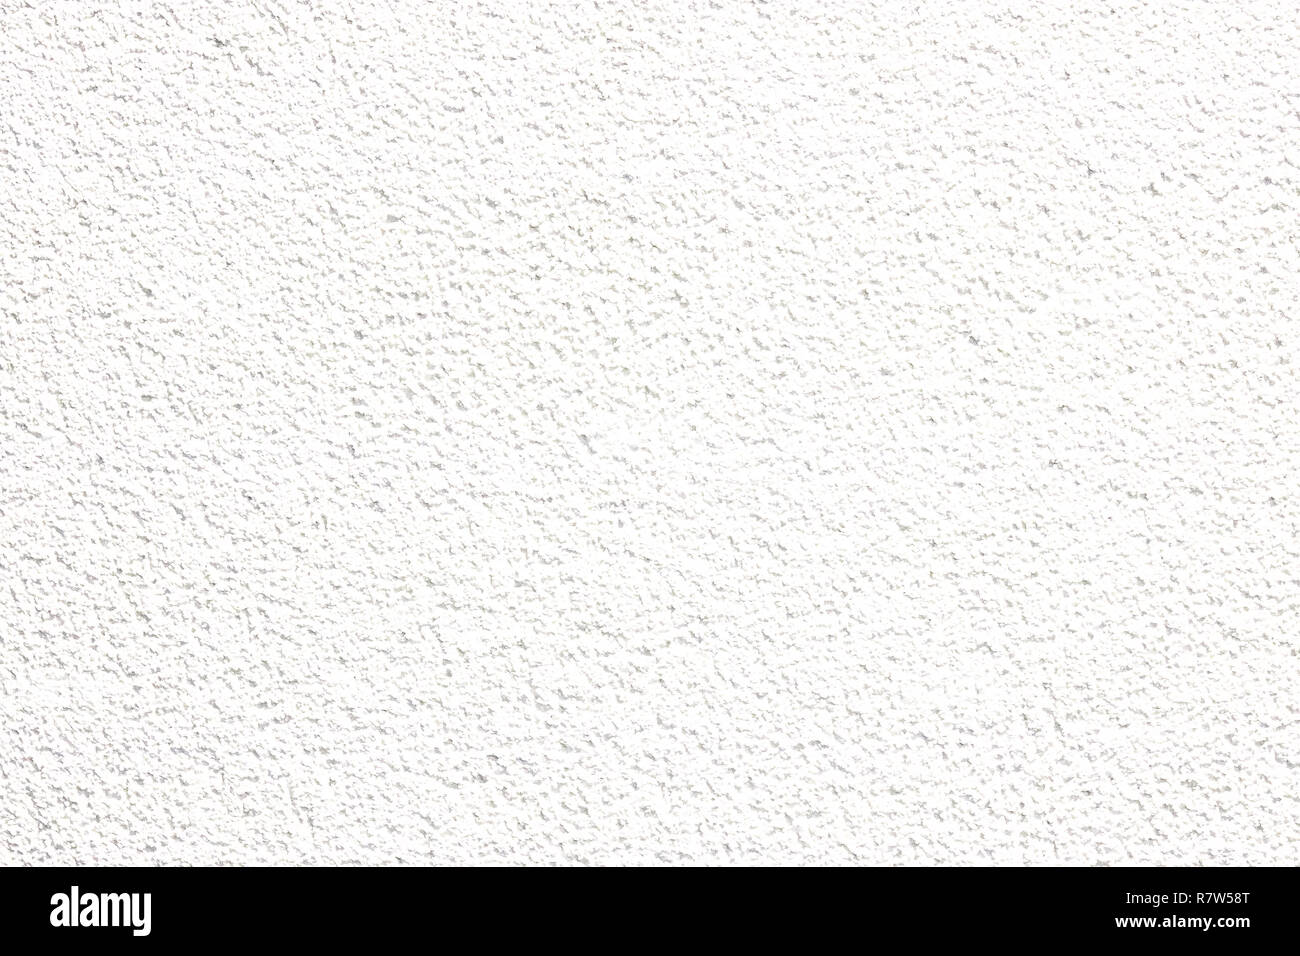 Couleur blanc texture pattern abstract background peut être utiliser comme fond d'écran de veille ou de la page de garde pour la saison d'hiver ou de noël fond de carte de Fes Banque D'Images